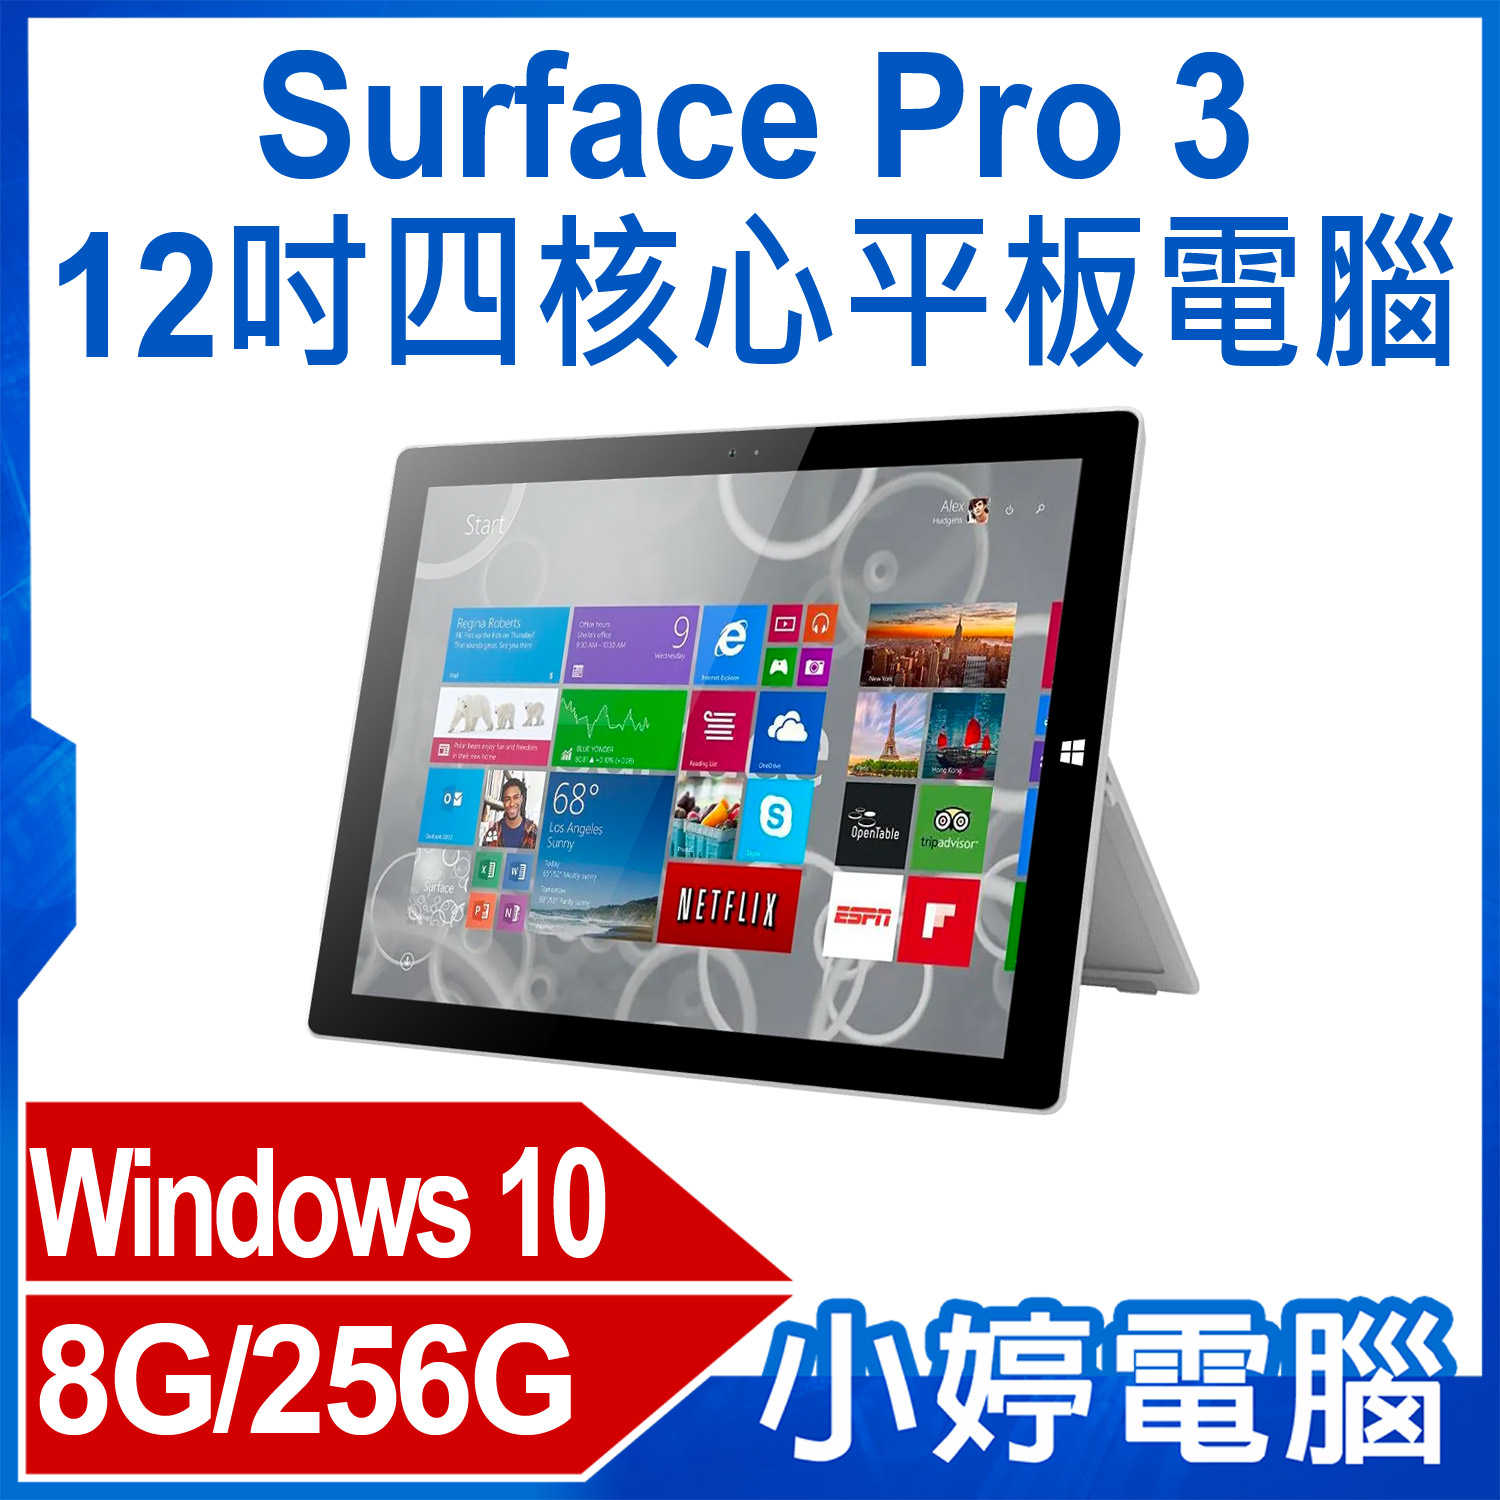 【小婷電腦】福利品 Surface Pro 3 12吋四核心平板電腦 Intel處理器 Win10 8G/256G